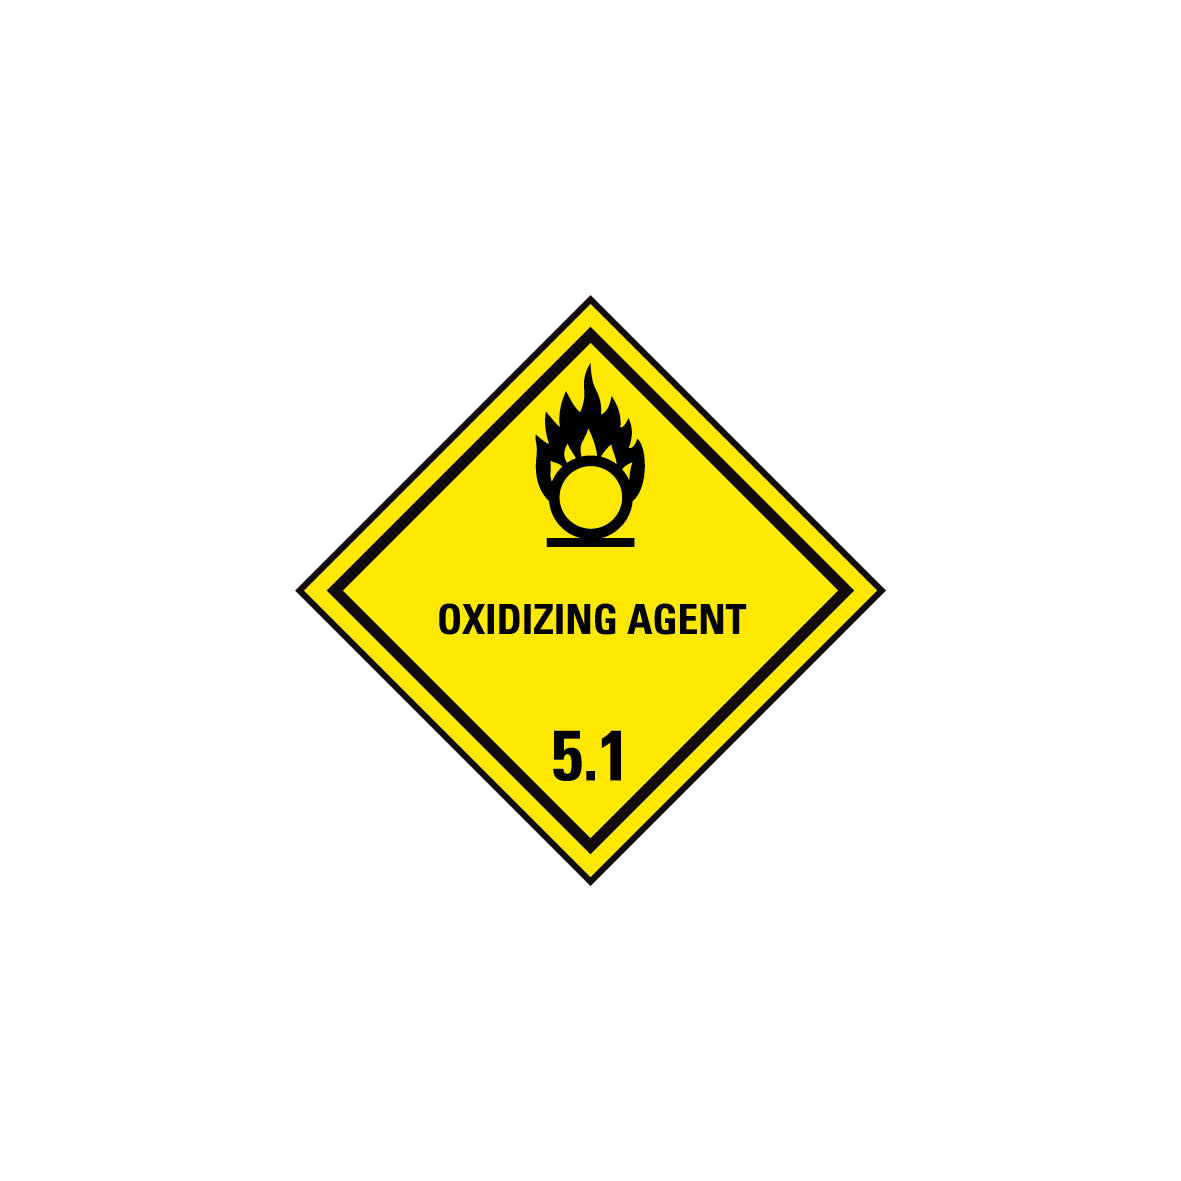 Gefahrgut Kl. 5.1, Entzündend (oxidierend) wirkende Stoffe 5.0116.1, Oyidizing agent